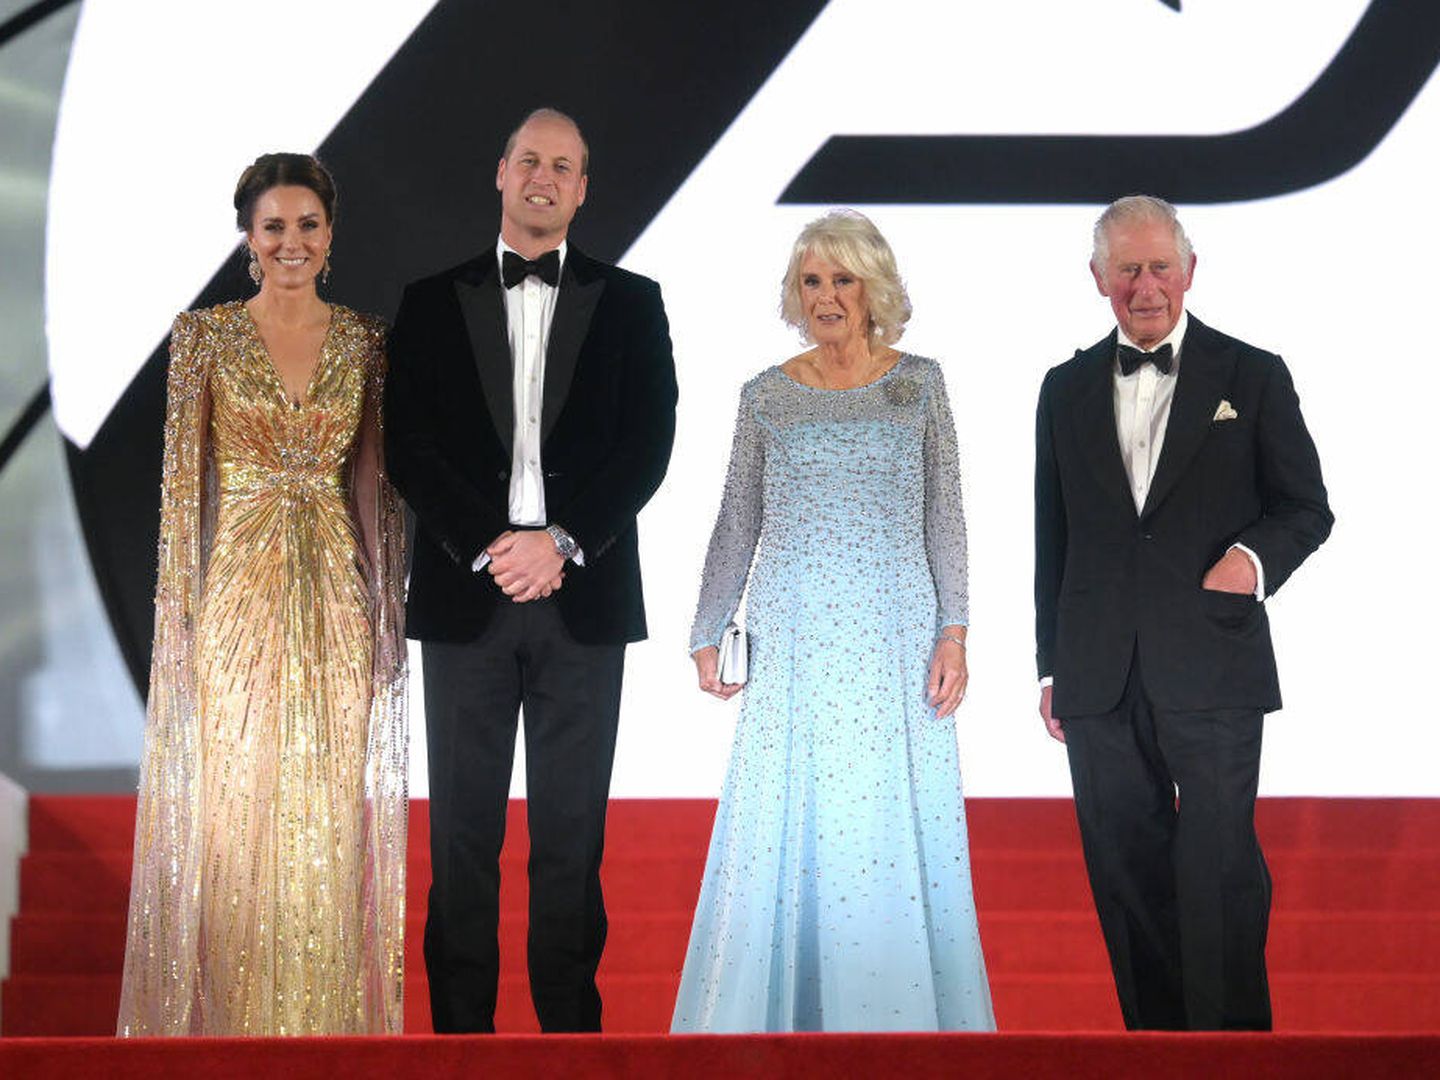 El look de Kate Middleton en el estreno de 'No Time to Die' causó sensación en el mundo de la moda. (Getty/Gareth Cattermole)